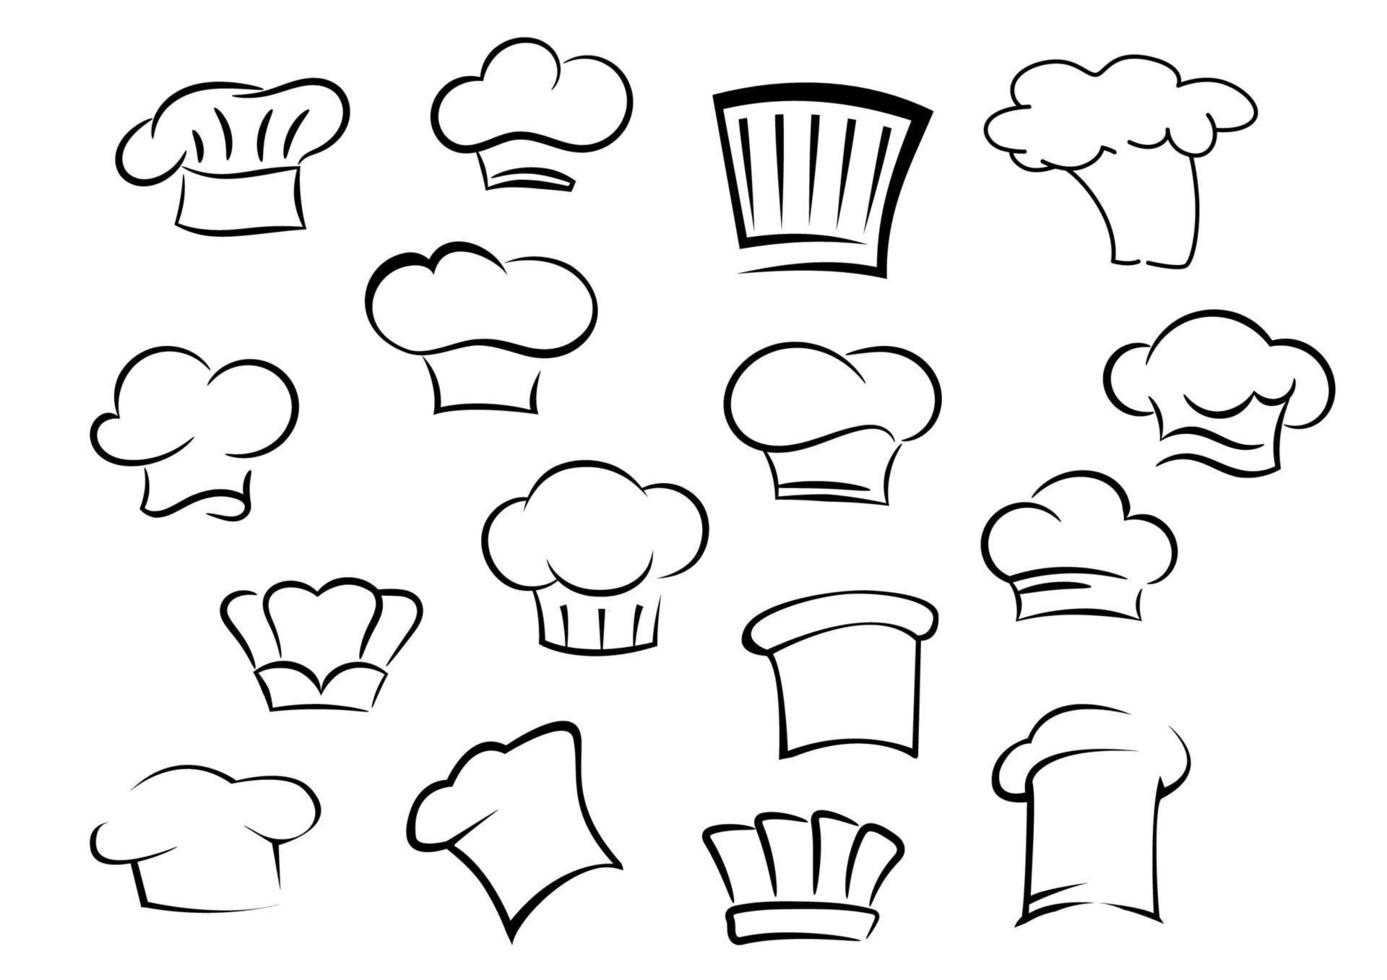 Gorros o gorras de chef para el personal de cocina. vector